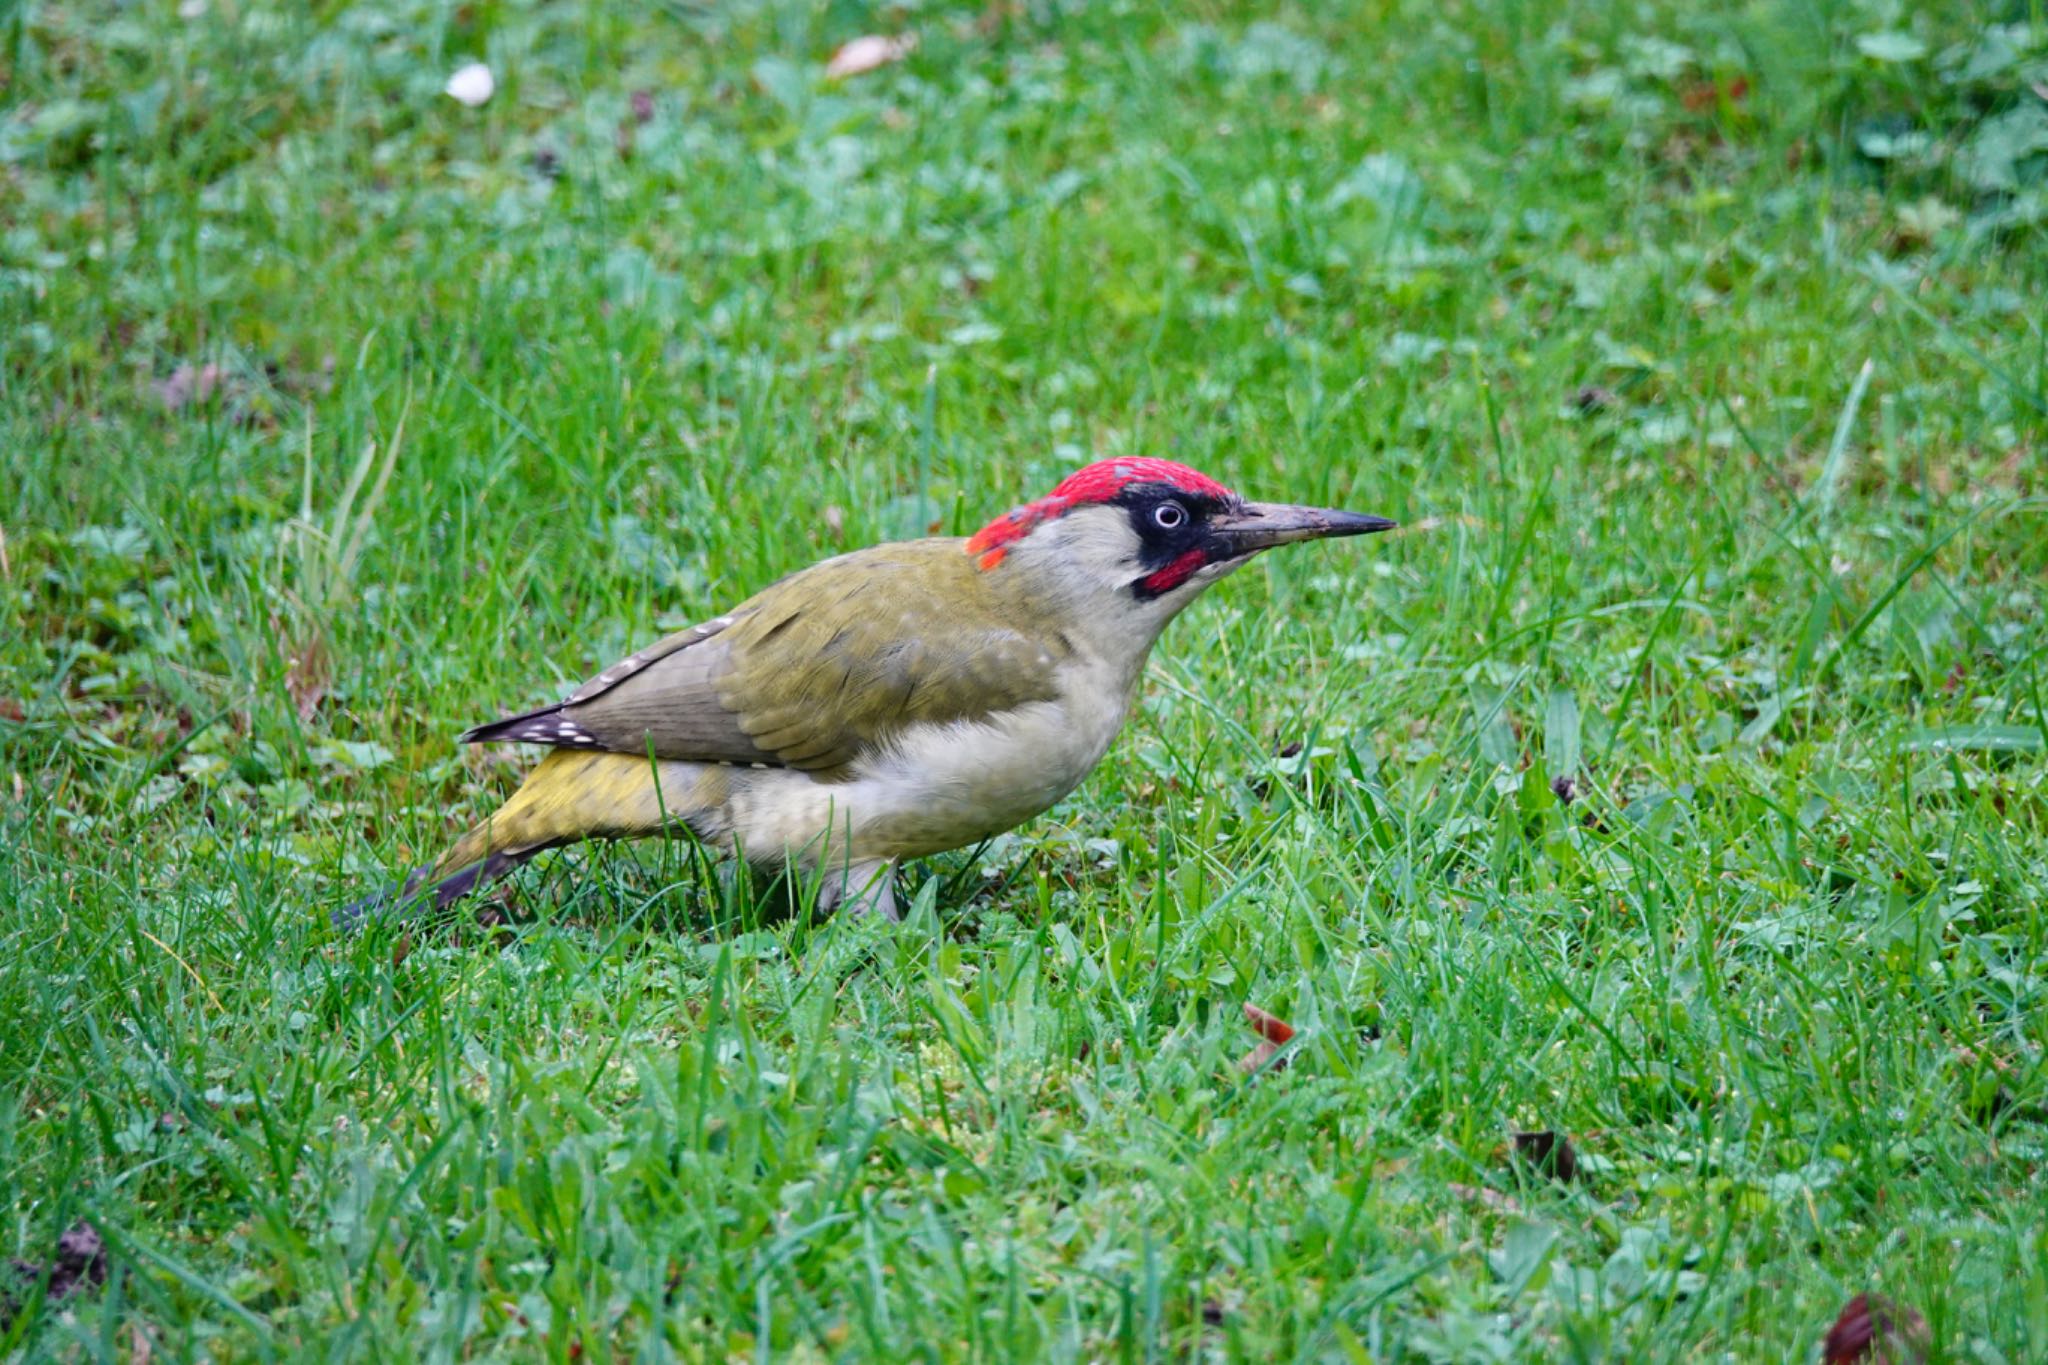 Photo of European Green Woodpecker at サンジェルマンアンレー、フランス by のどか